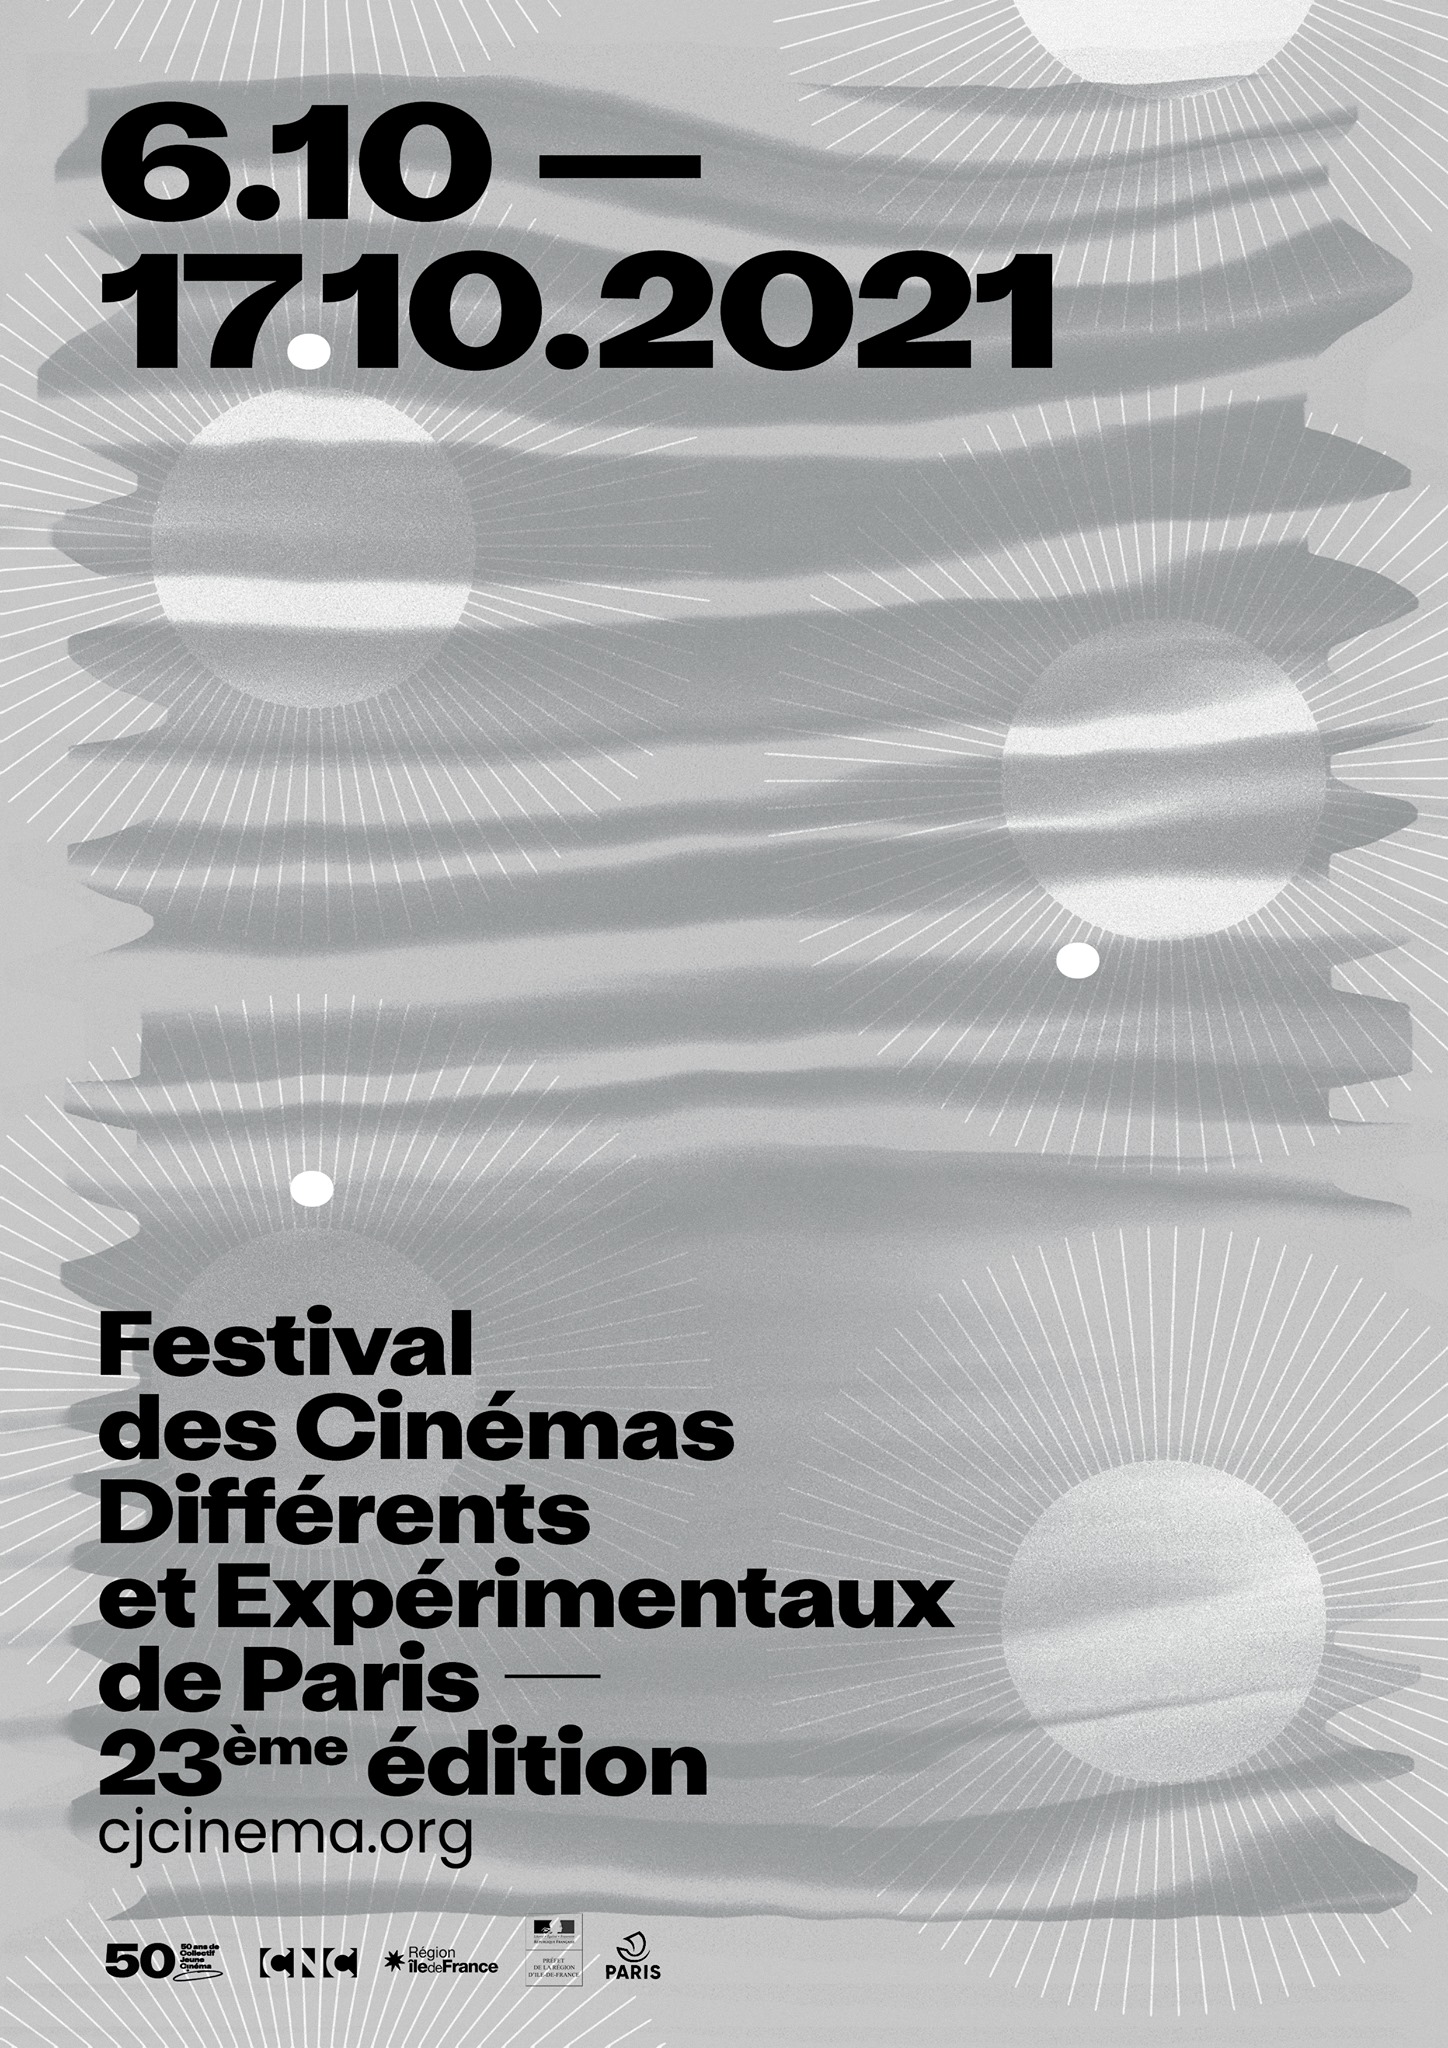 Festival des Cinémas Différents et Expérimentaux de Paris — 23ème édition